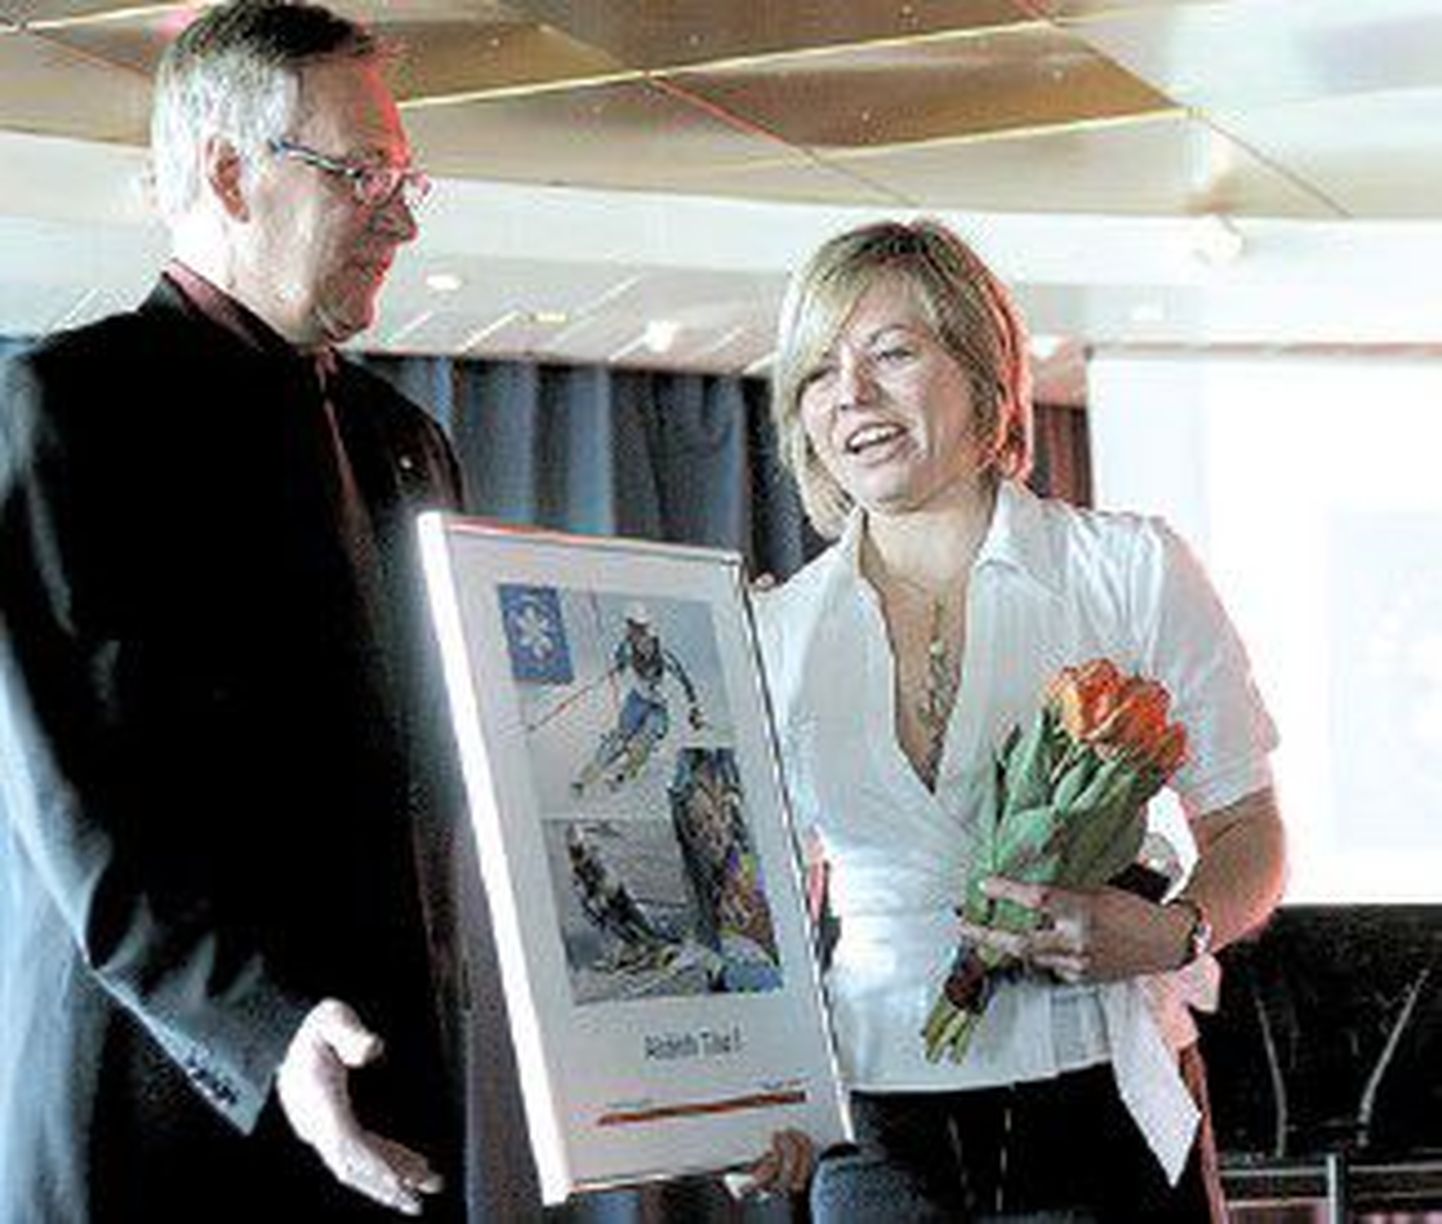 Горнолыжница Тийу Нурмберг объявила о завершении своей профессиональной карьеры и получила памятный диплом из рук президента Эстонского лыжного союза Тоомаса Сави.